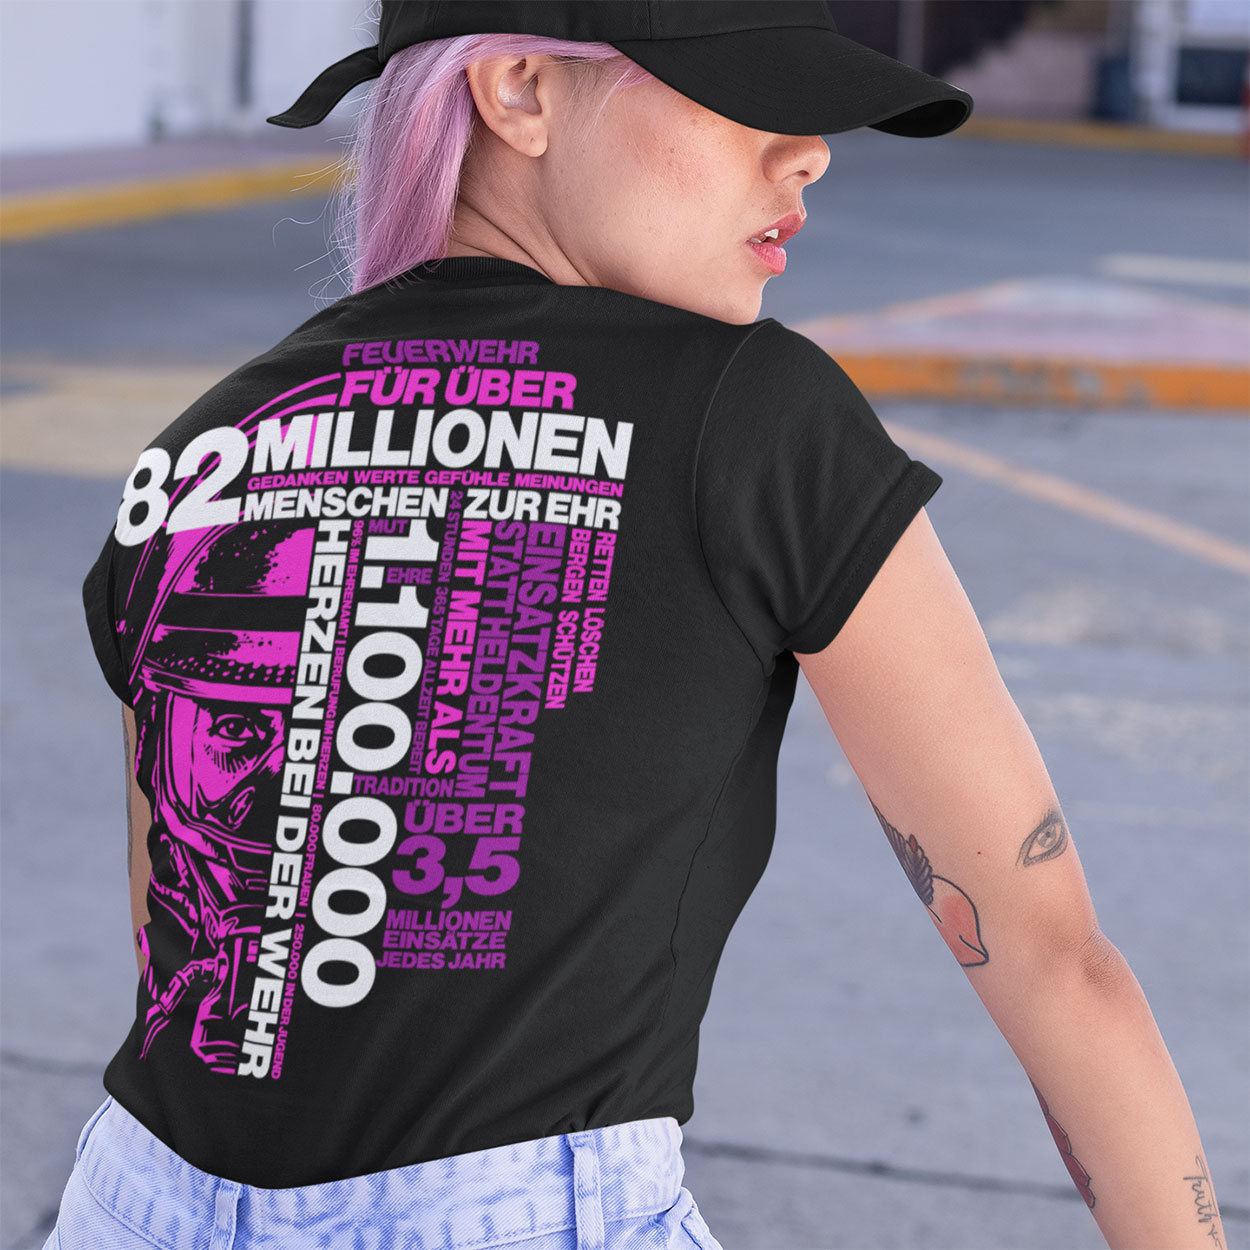 82 Millionen Design - Feuerwehr Frauen T-Shirt 